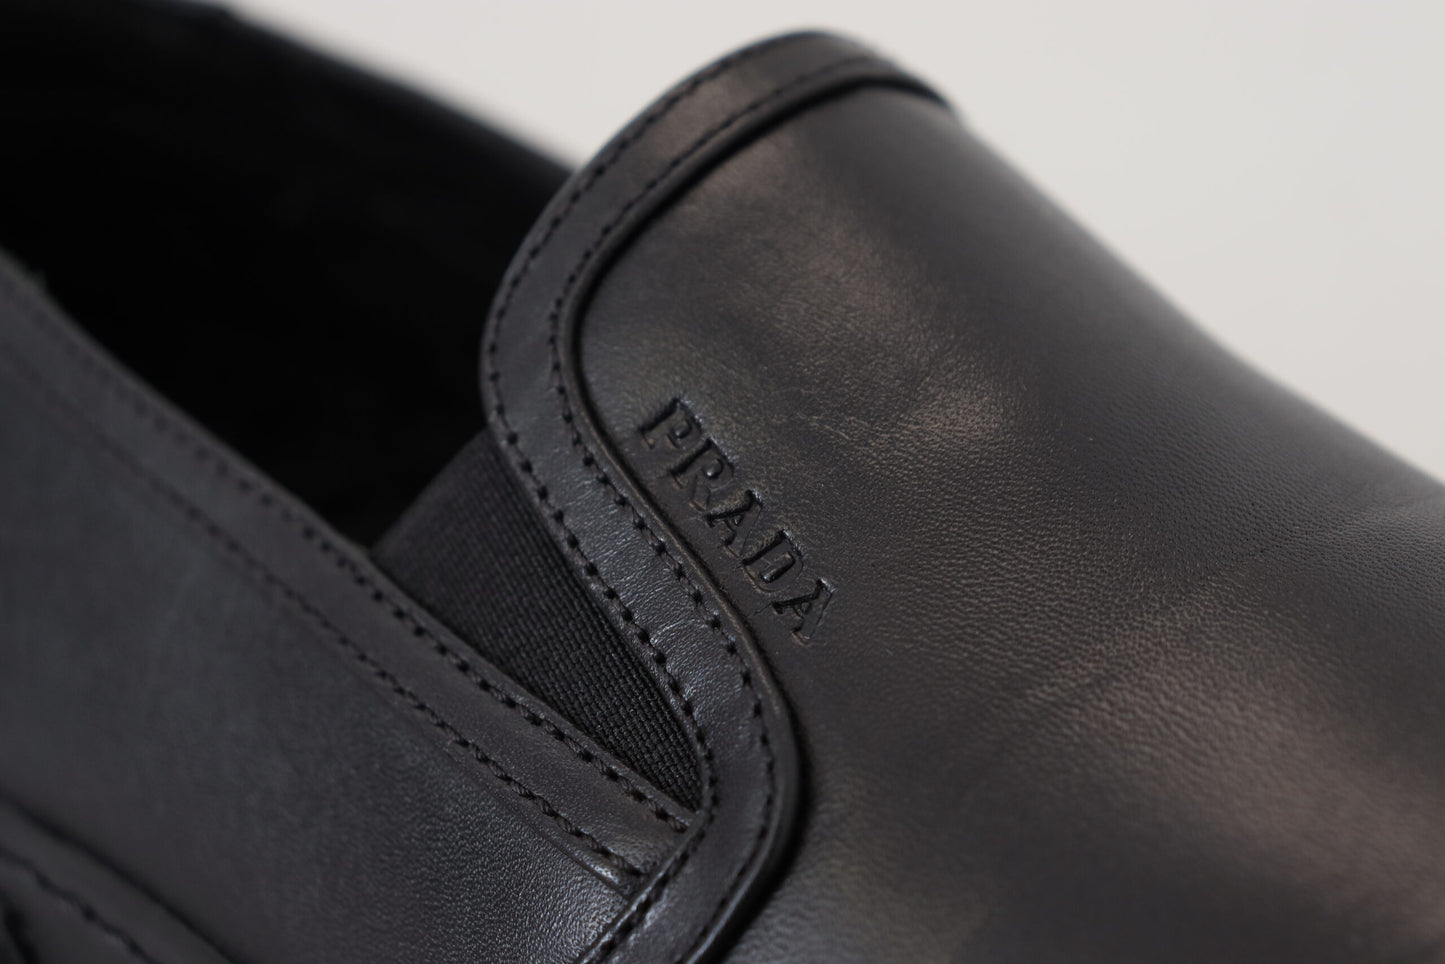 Sleek Black Low-Top Leather Sneakers